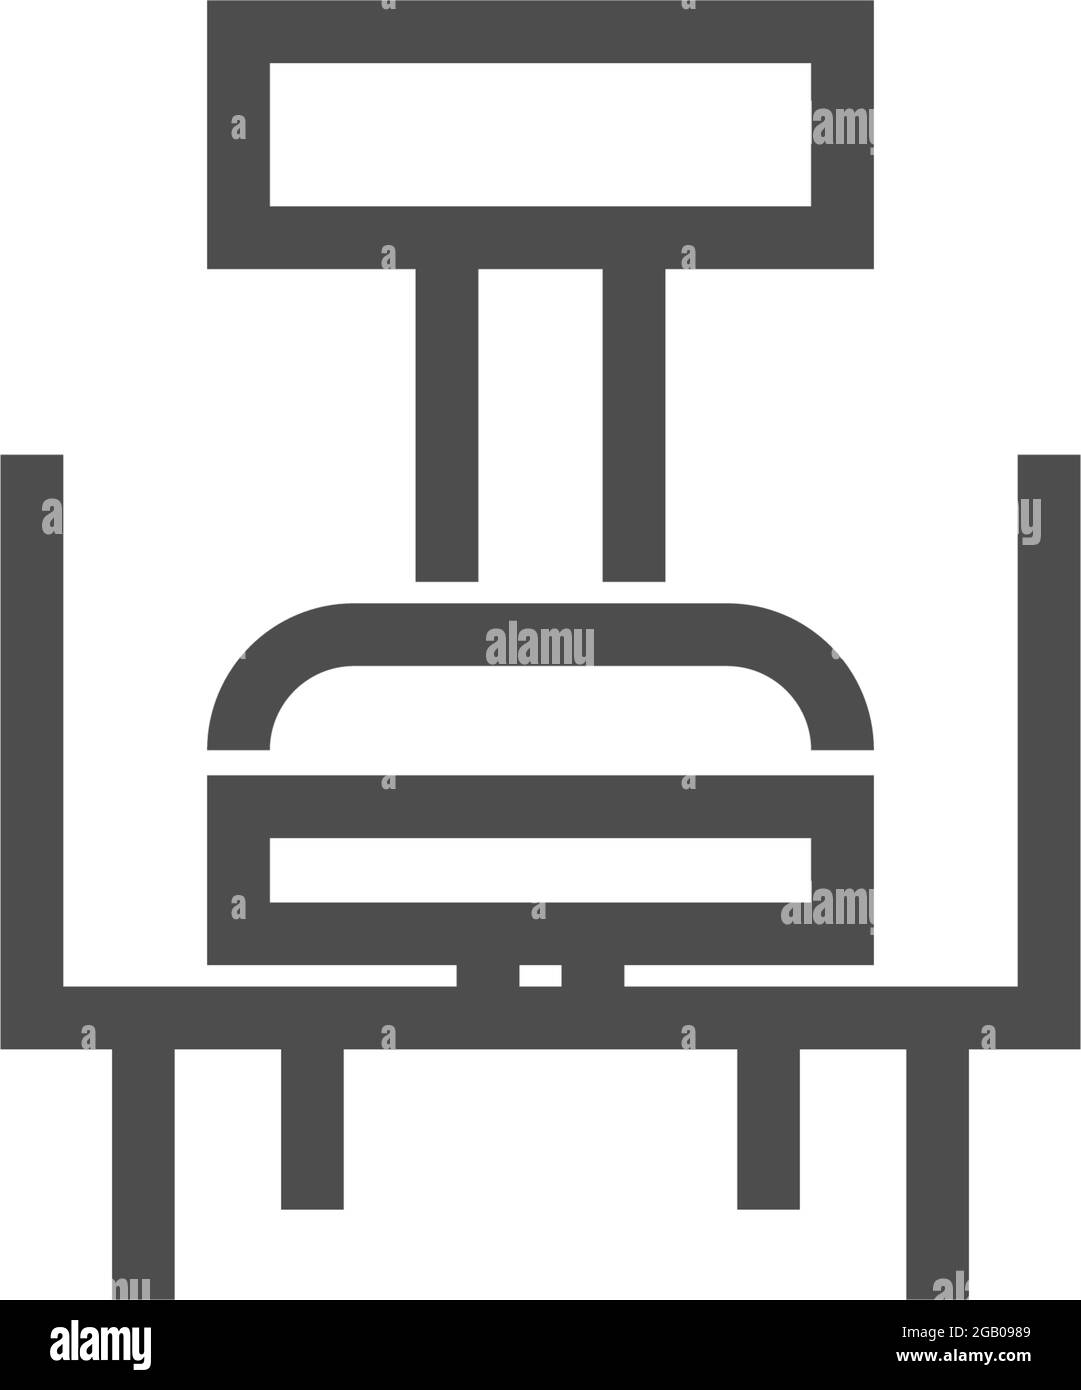 Furniture logo icon vector flat design template Stock Vector